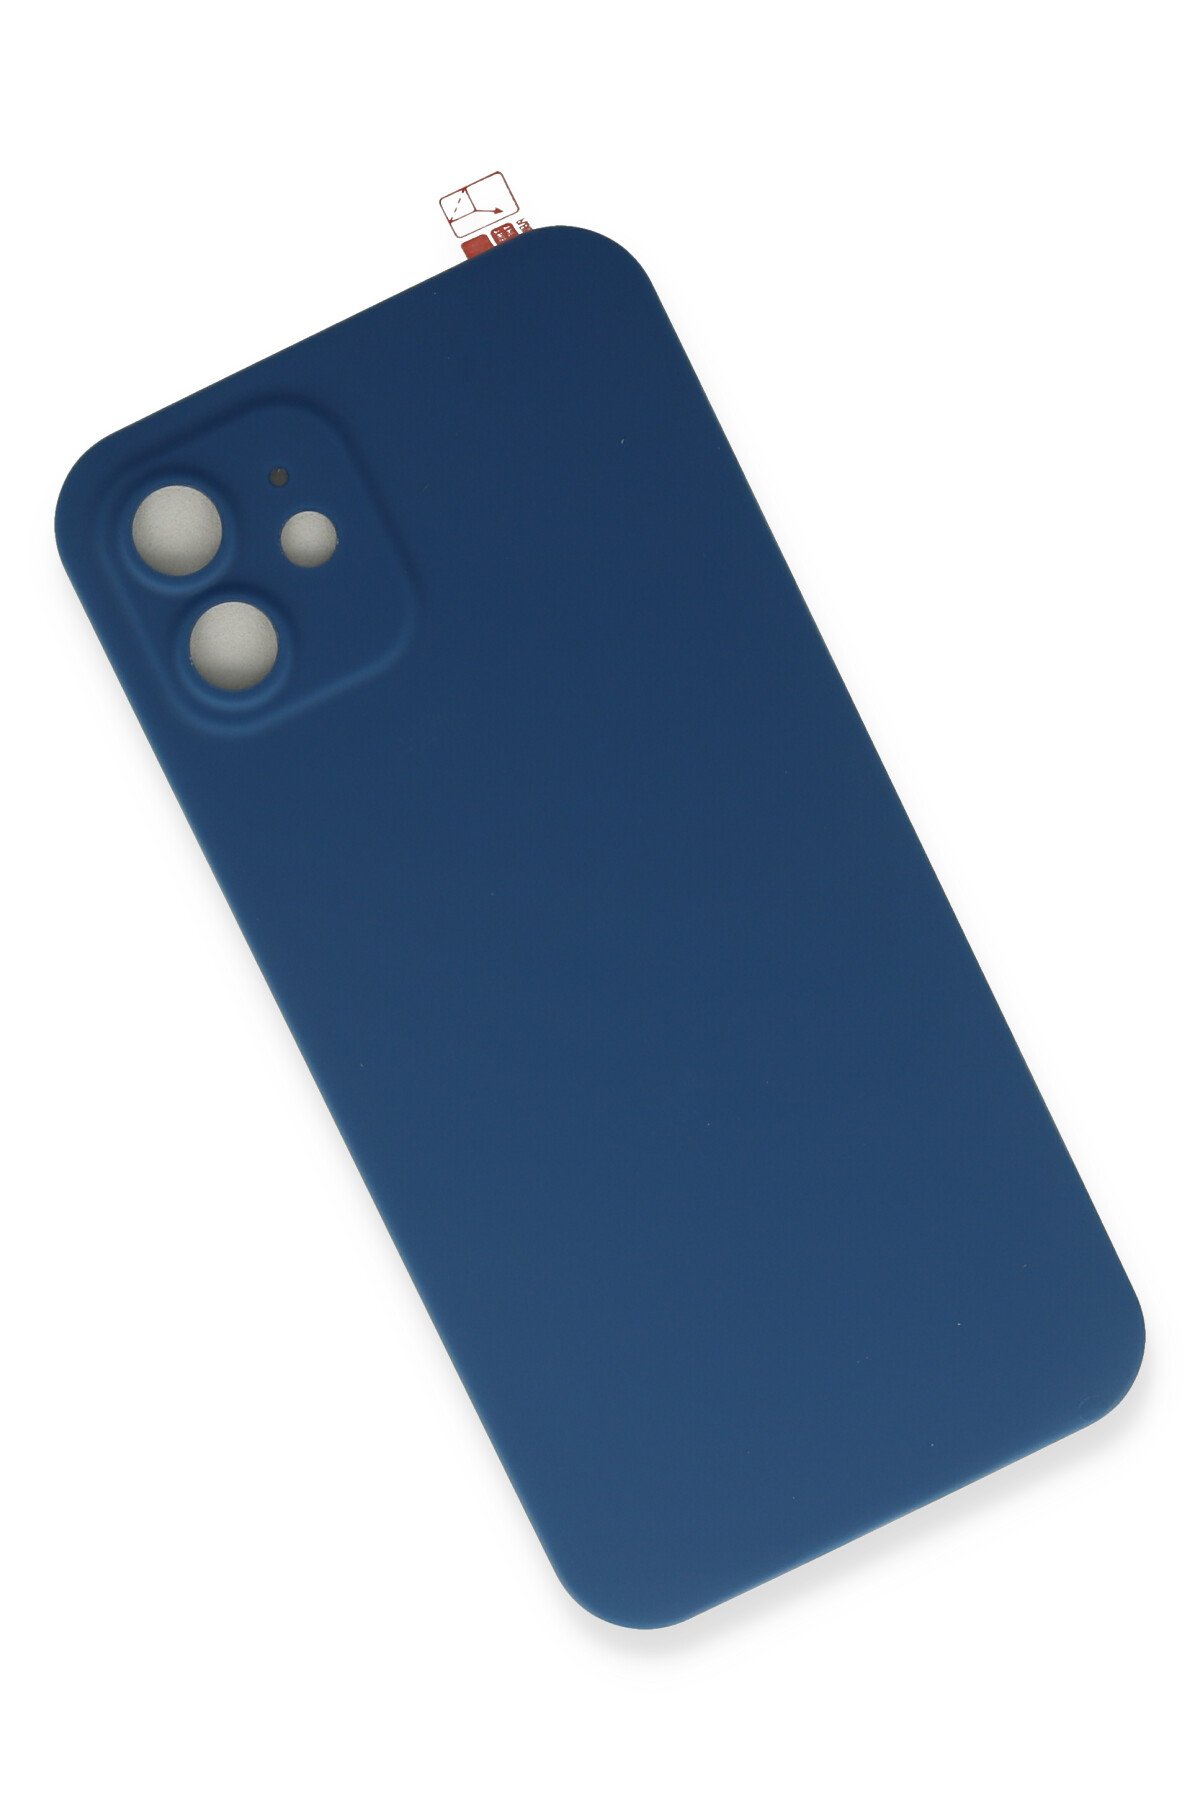 Newface iPhone 11 Kılıf Apollo Magneticsafe Desenli Kapak - Apollo Mavi - 1